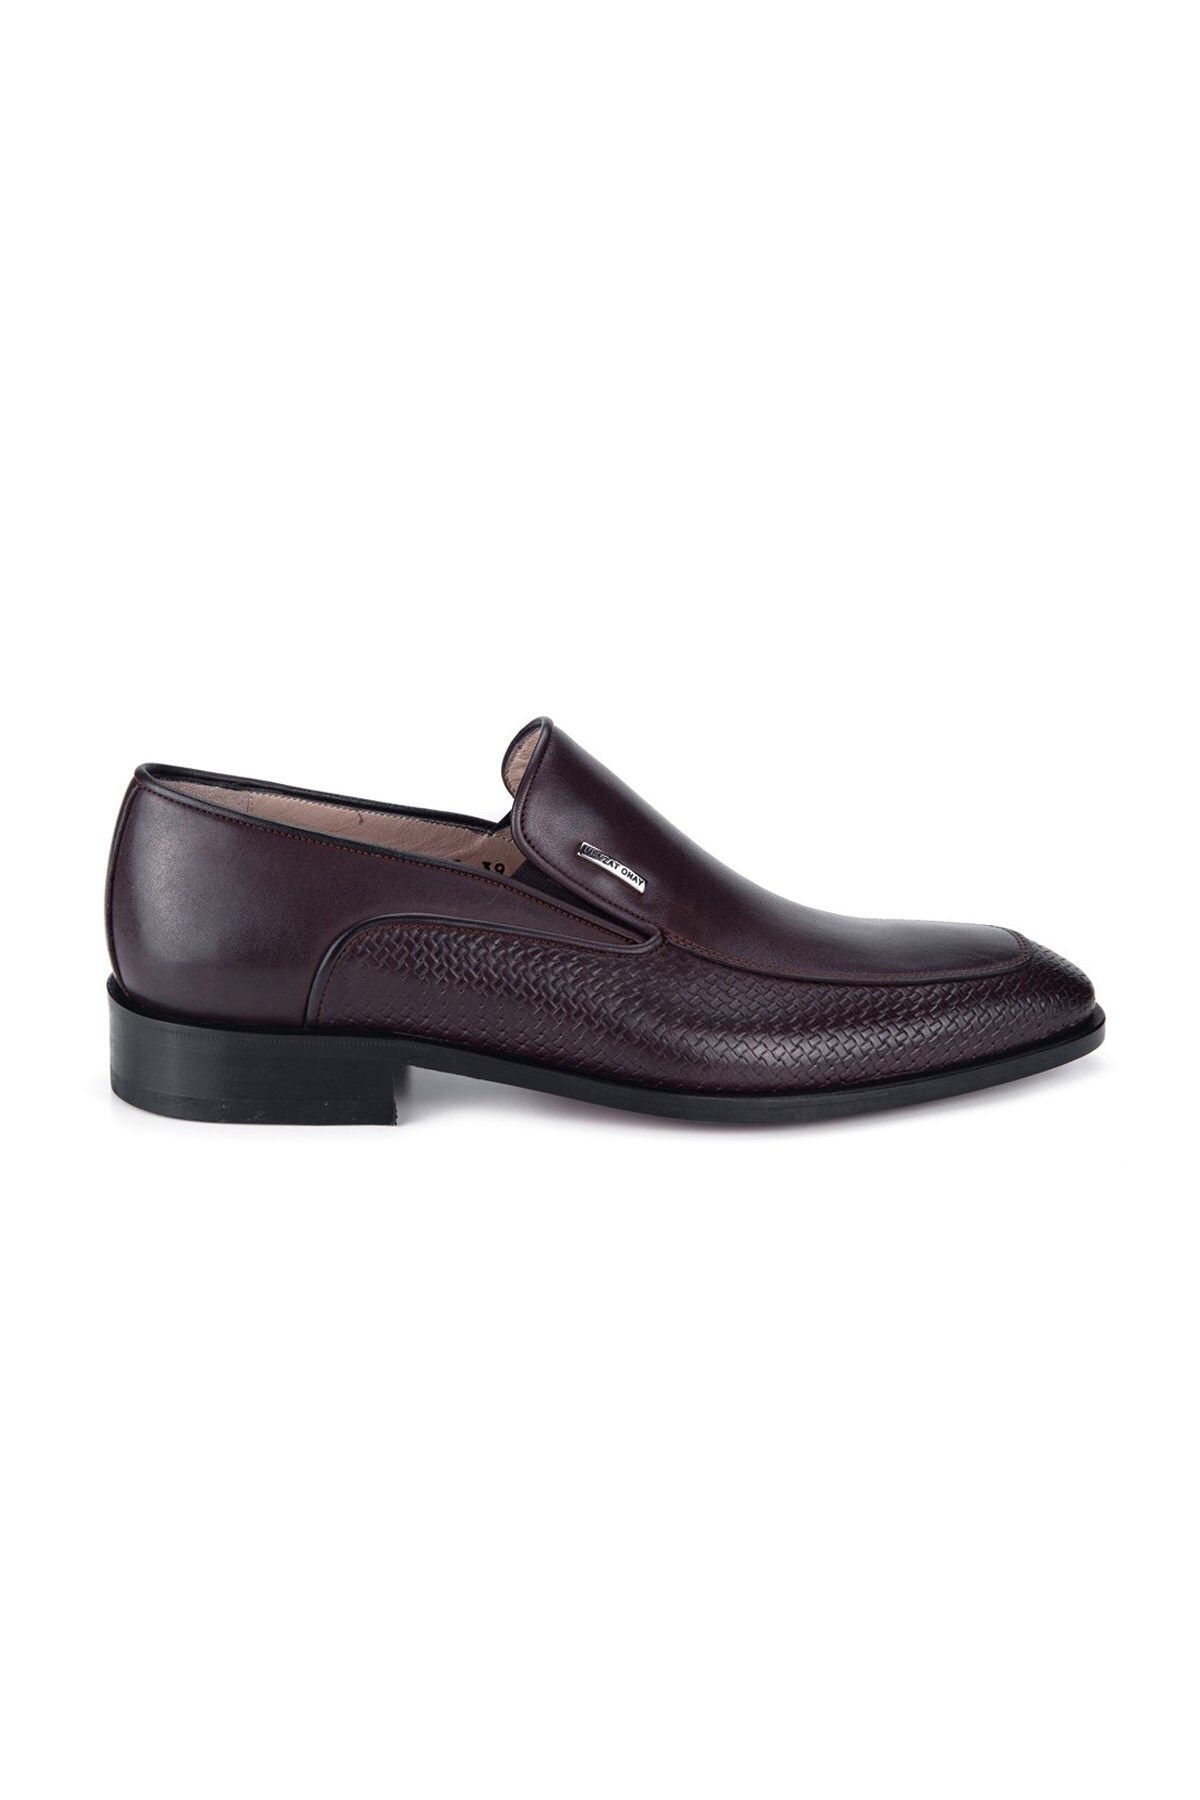 Nevzat Onay 9122-223 Erkek Klasik Ayakkabı - Kahverengi